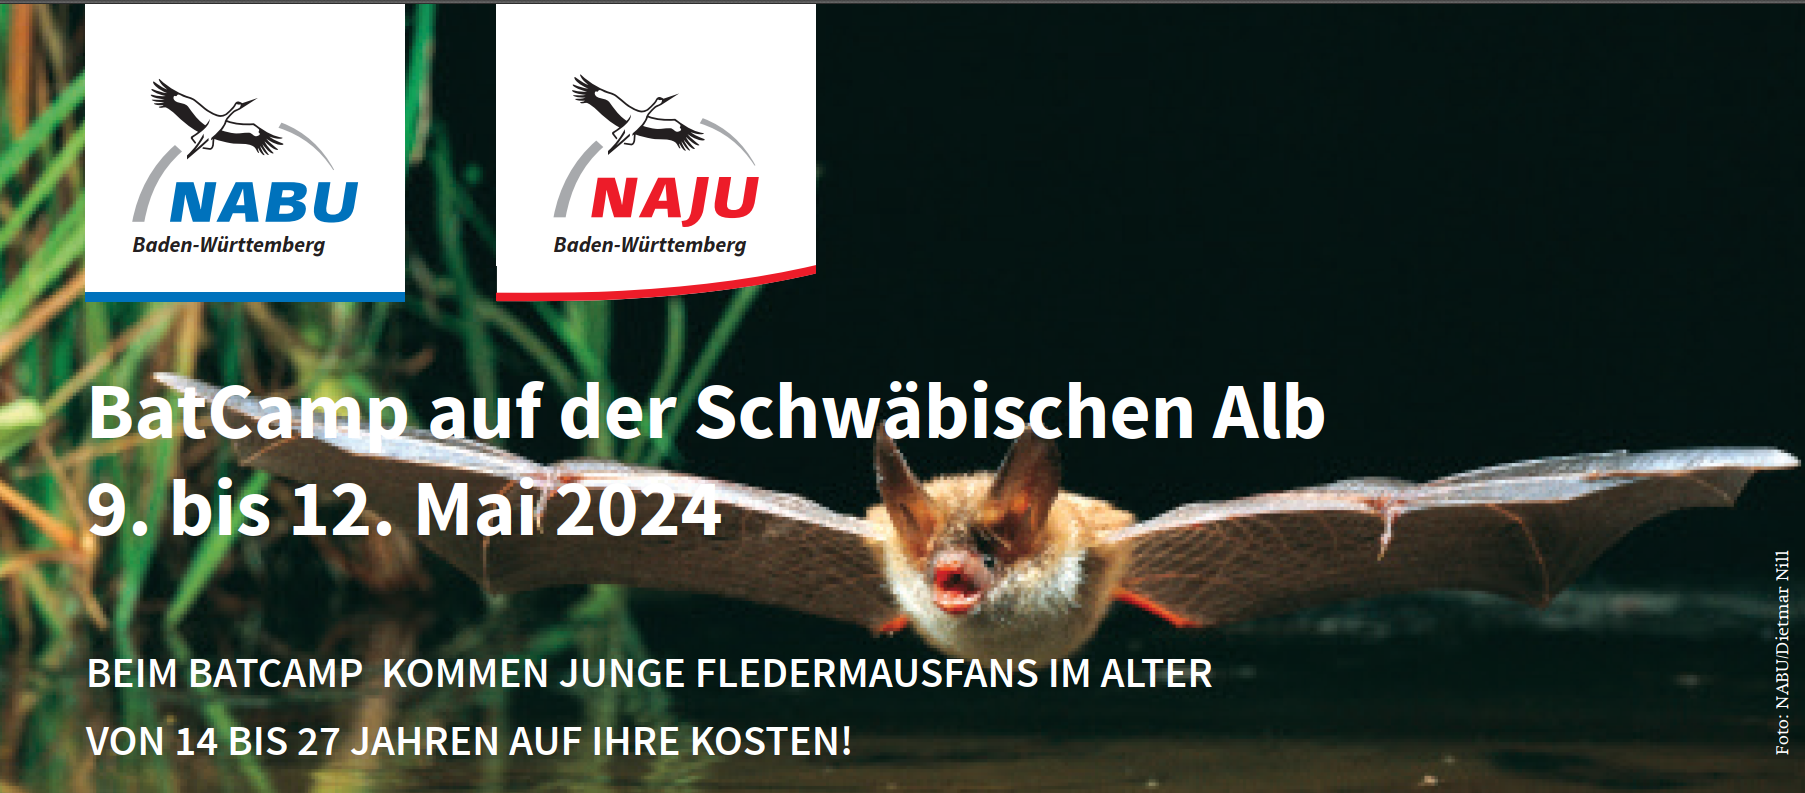 NABU: BatCamp auf der Schwäbischen Alb für Fledermausfans von 14 bis 27